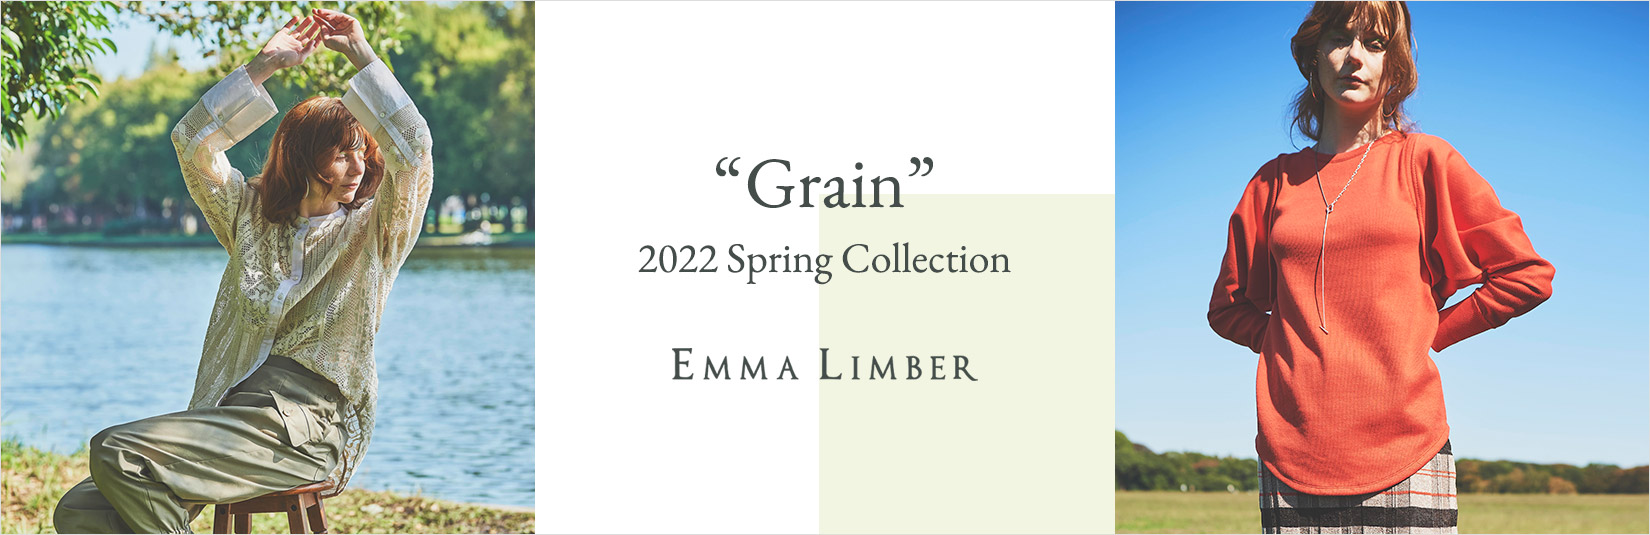 EMMA LIMBER  2022 Spring Collection “Grain”